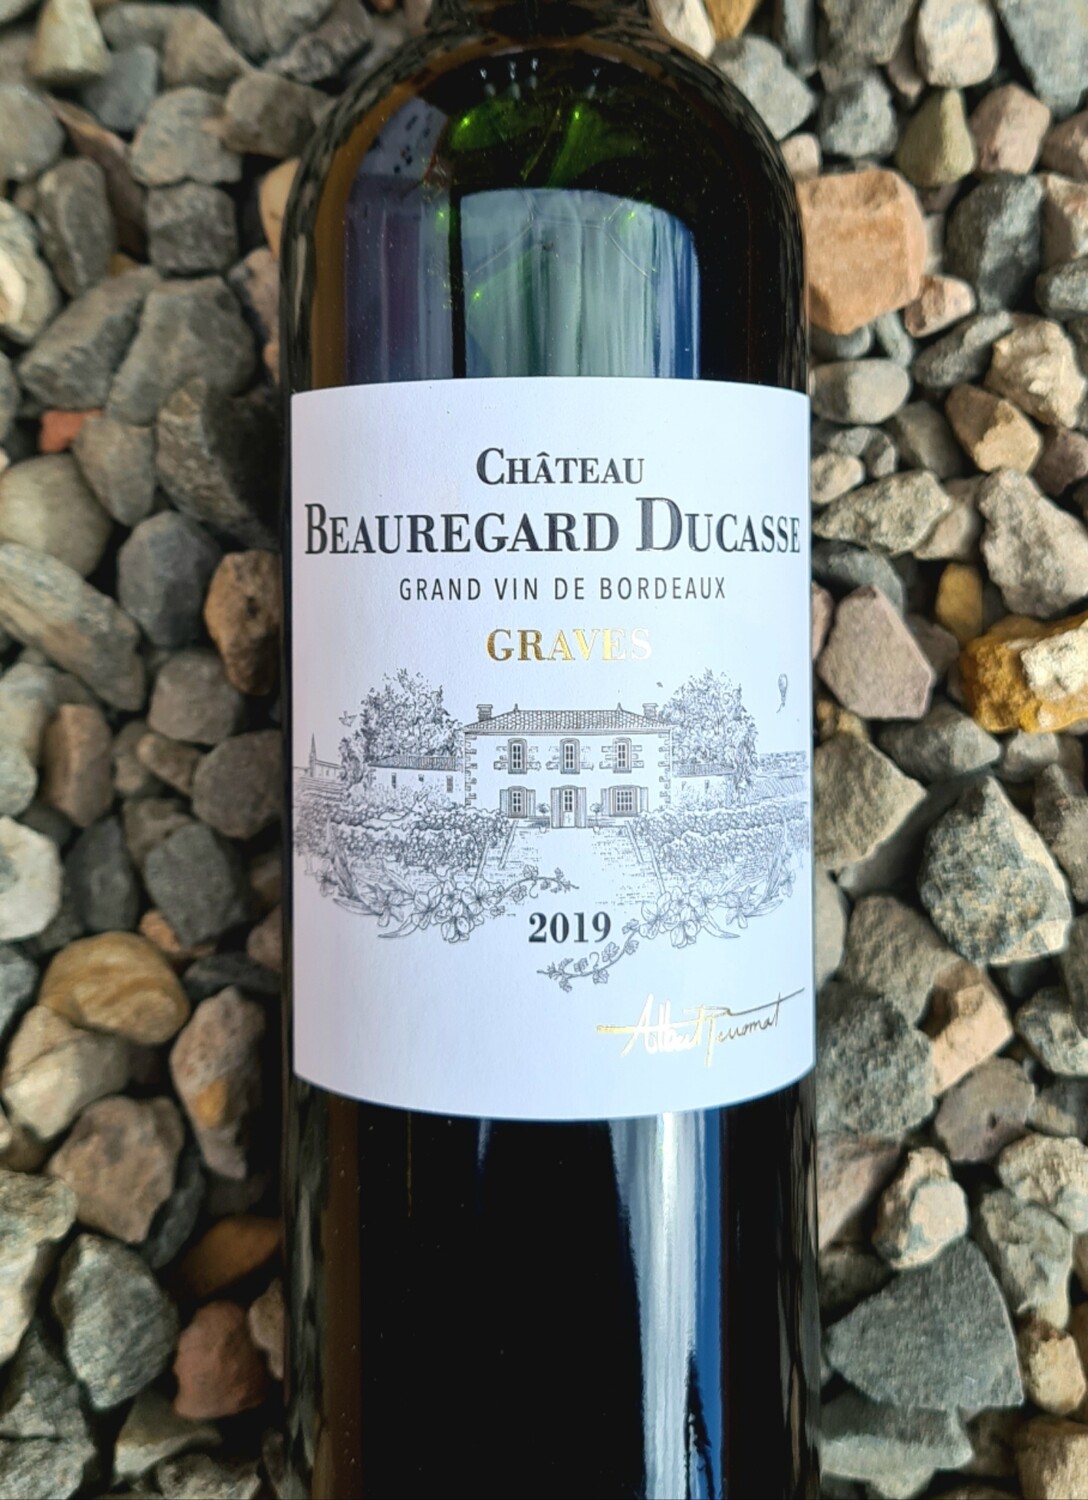 Chateau Beauregard Ducasse Rouge 2019 Graves